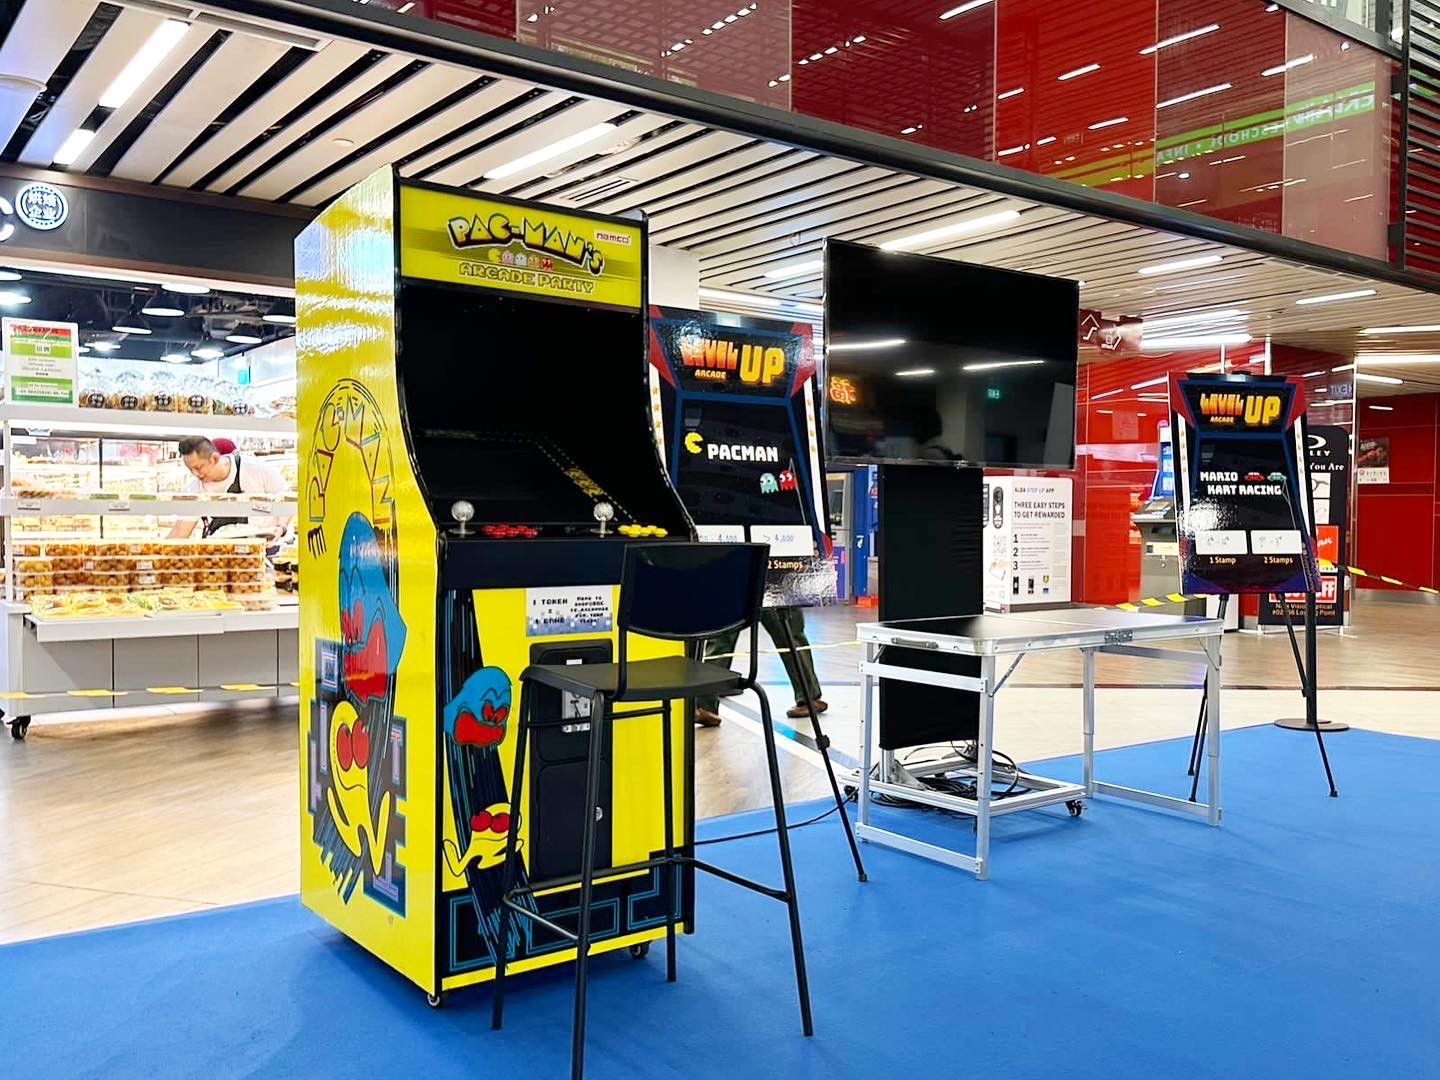 retro pacman arcade machine for rent singapore